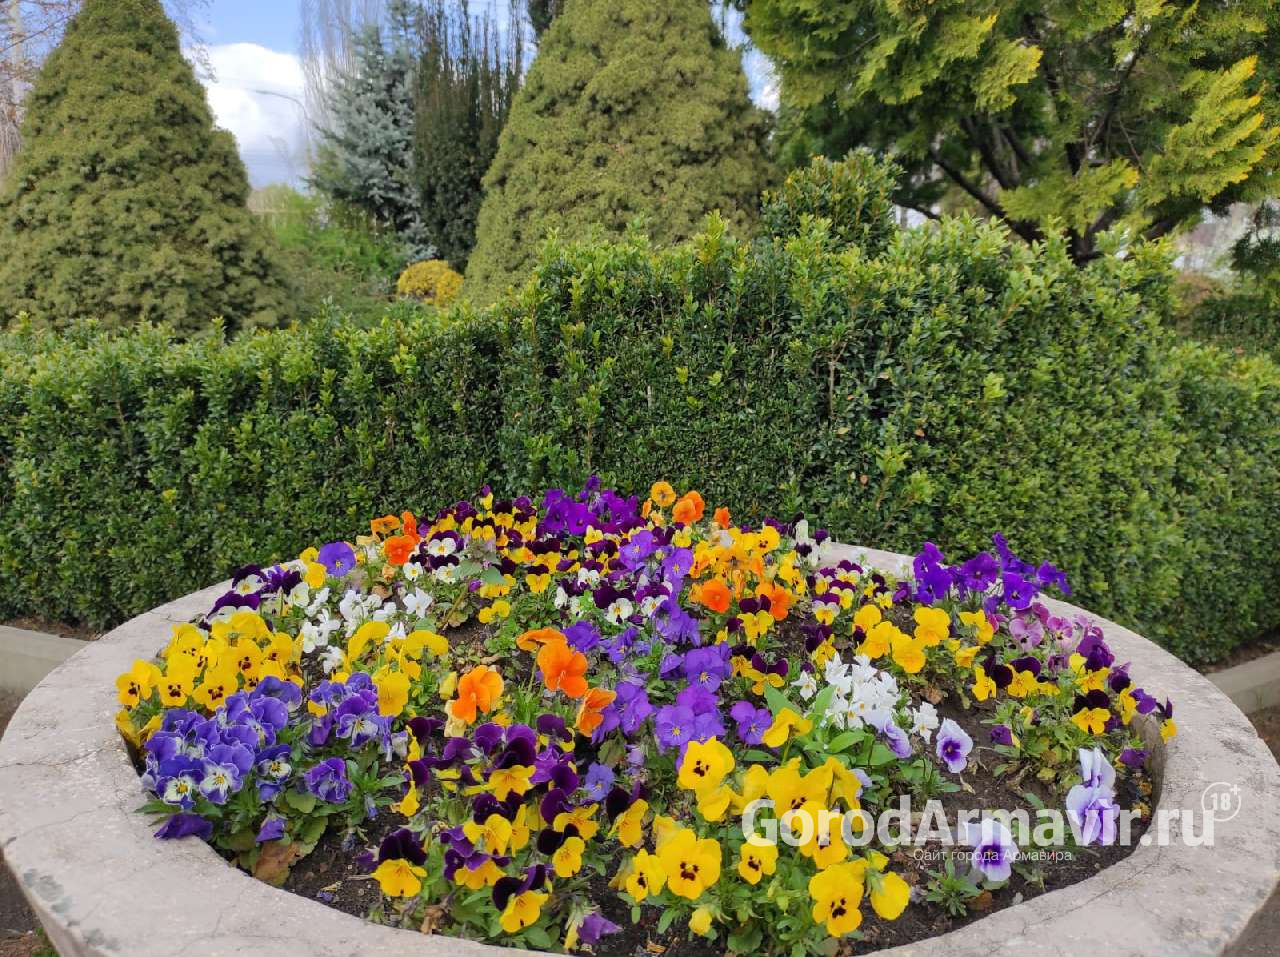 Озеленители Армавира высадили в скверах и парках около 400 тысяч цветов 